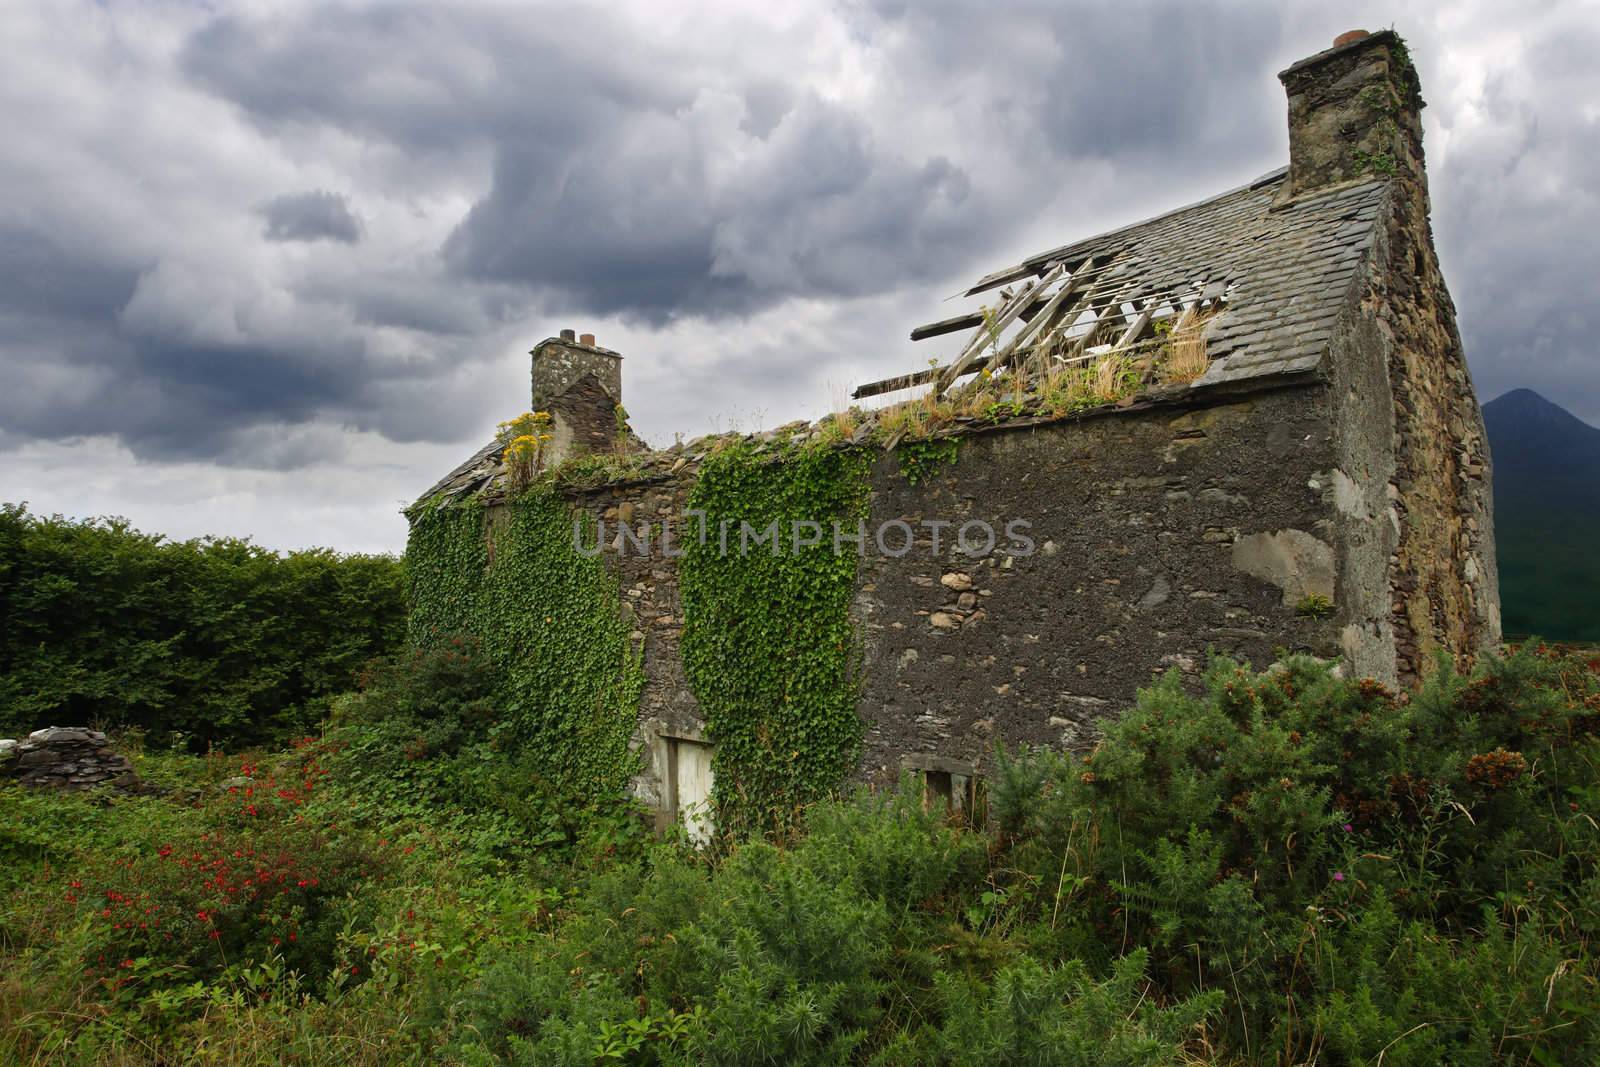 A derelict house somewhere in Ireland.
